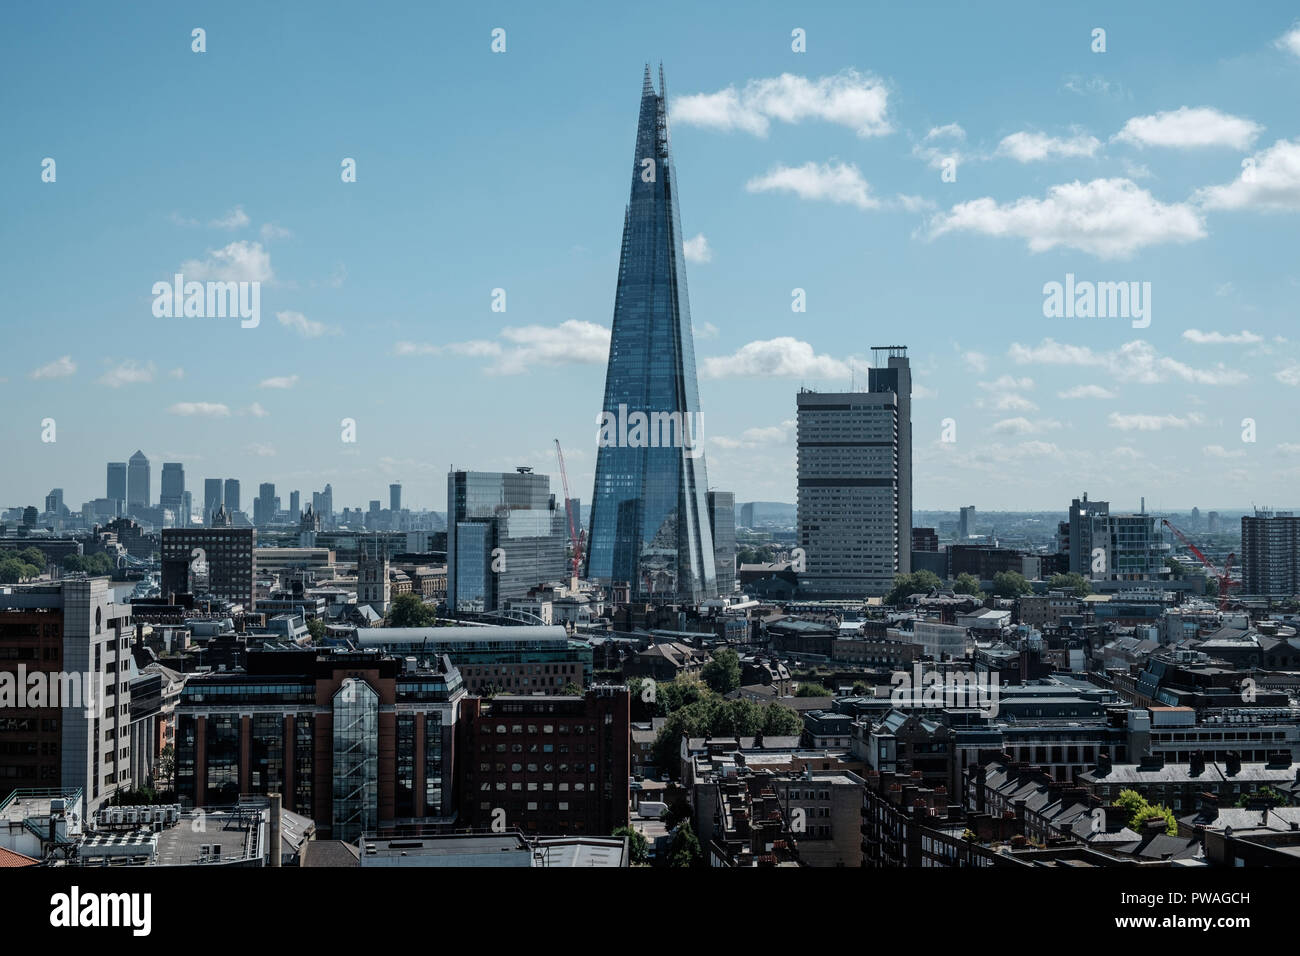 Blick auf die Skyline von London einschließlich der kommerziellen Wolkenkratzer der Shard. Horizontale, keine Menschen, kopieren. Stockfoto